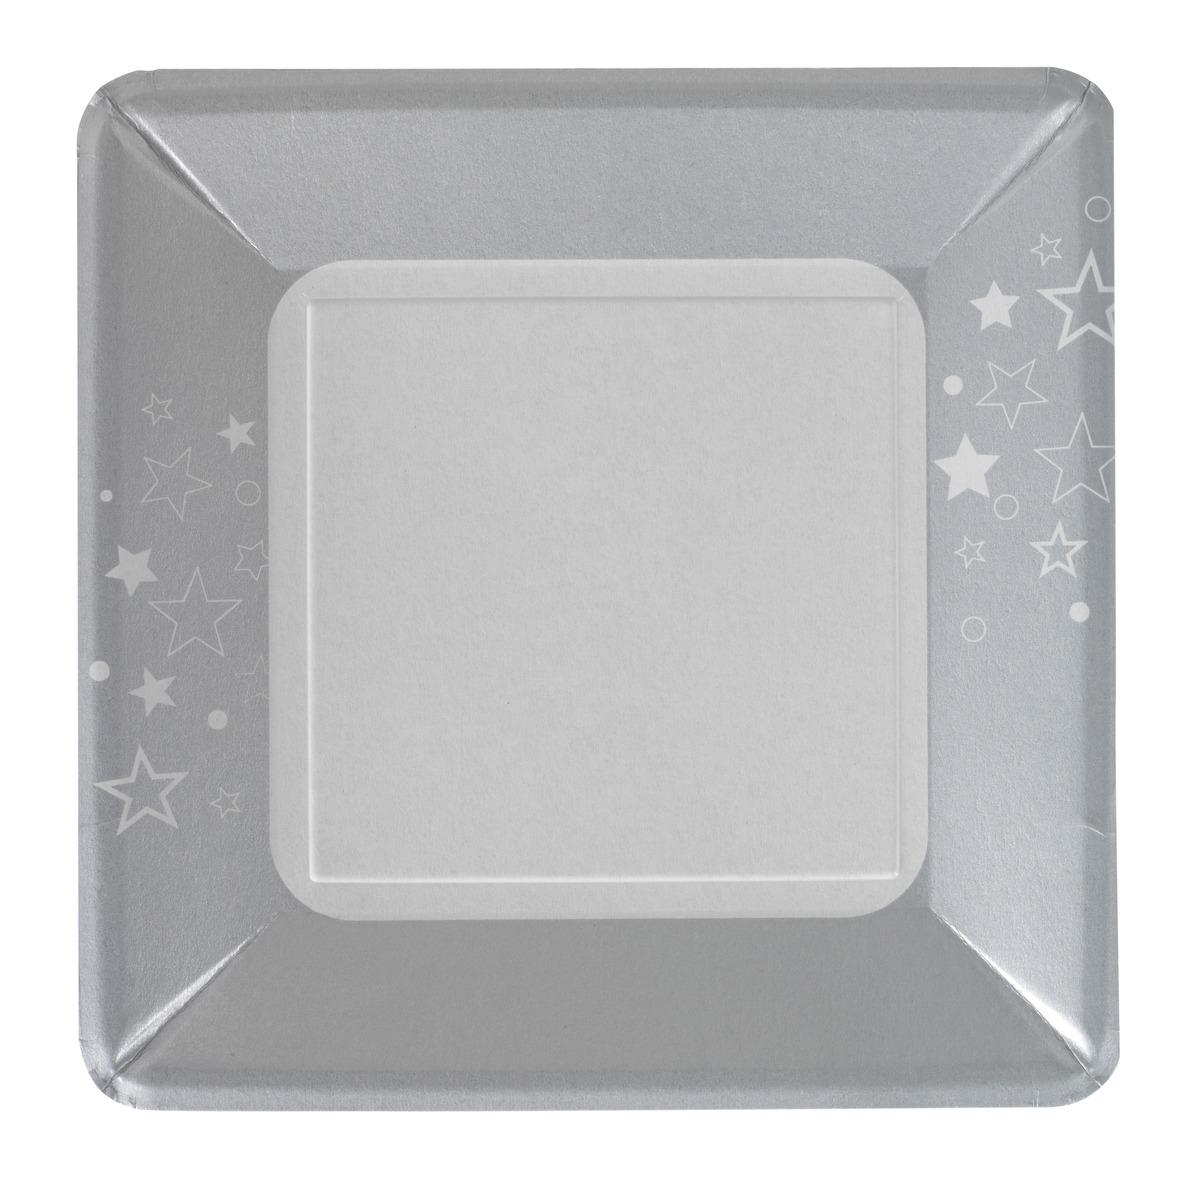 Lot de 8 assiettes carrées en carton - 24 x 24 cm - Blanc, Gris argenté